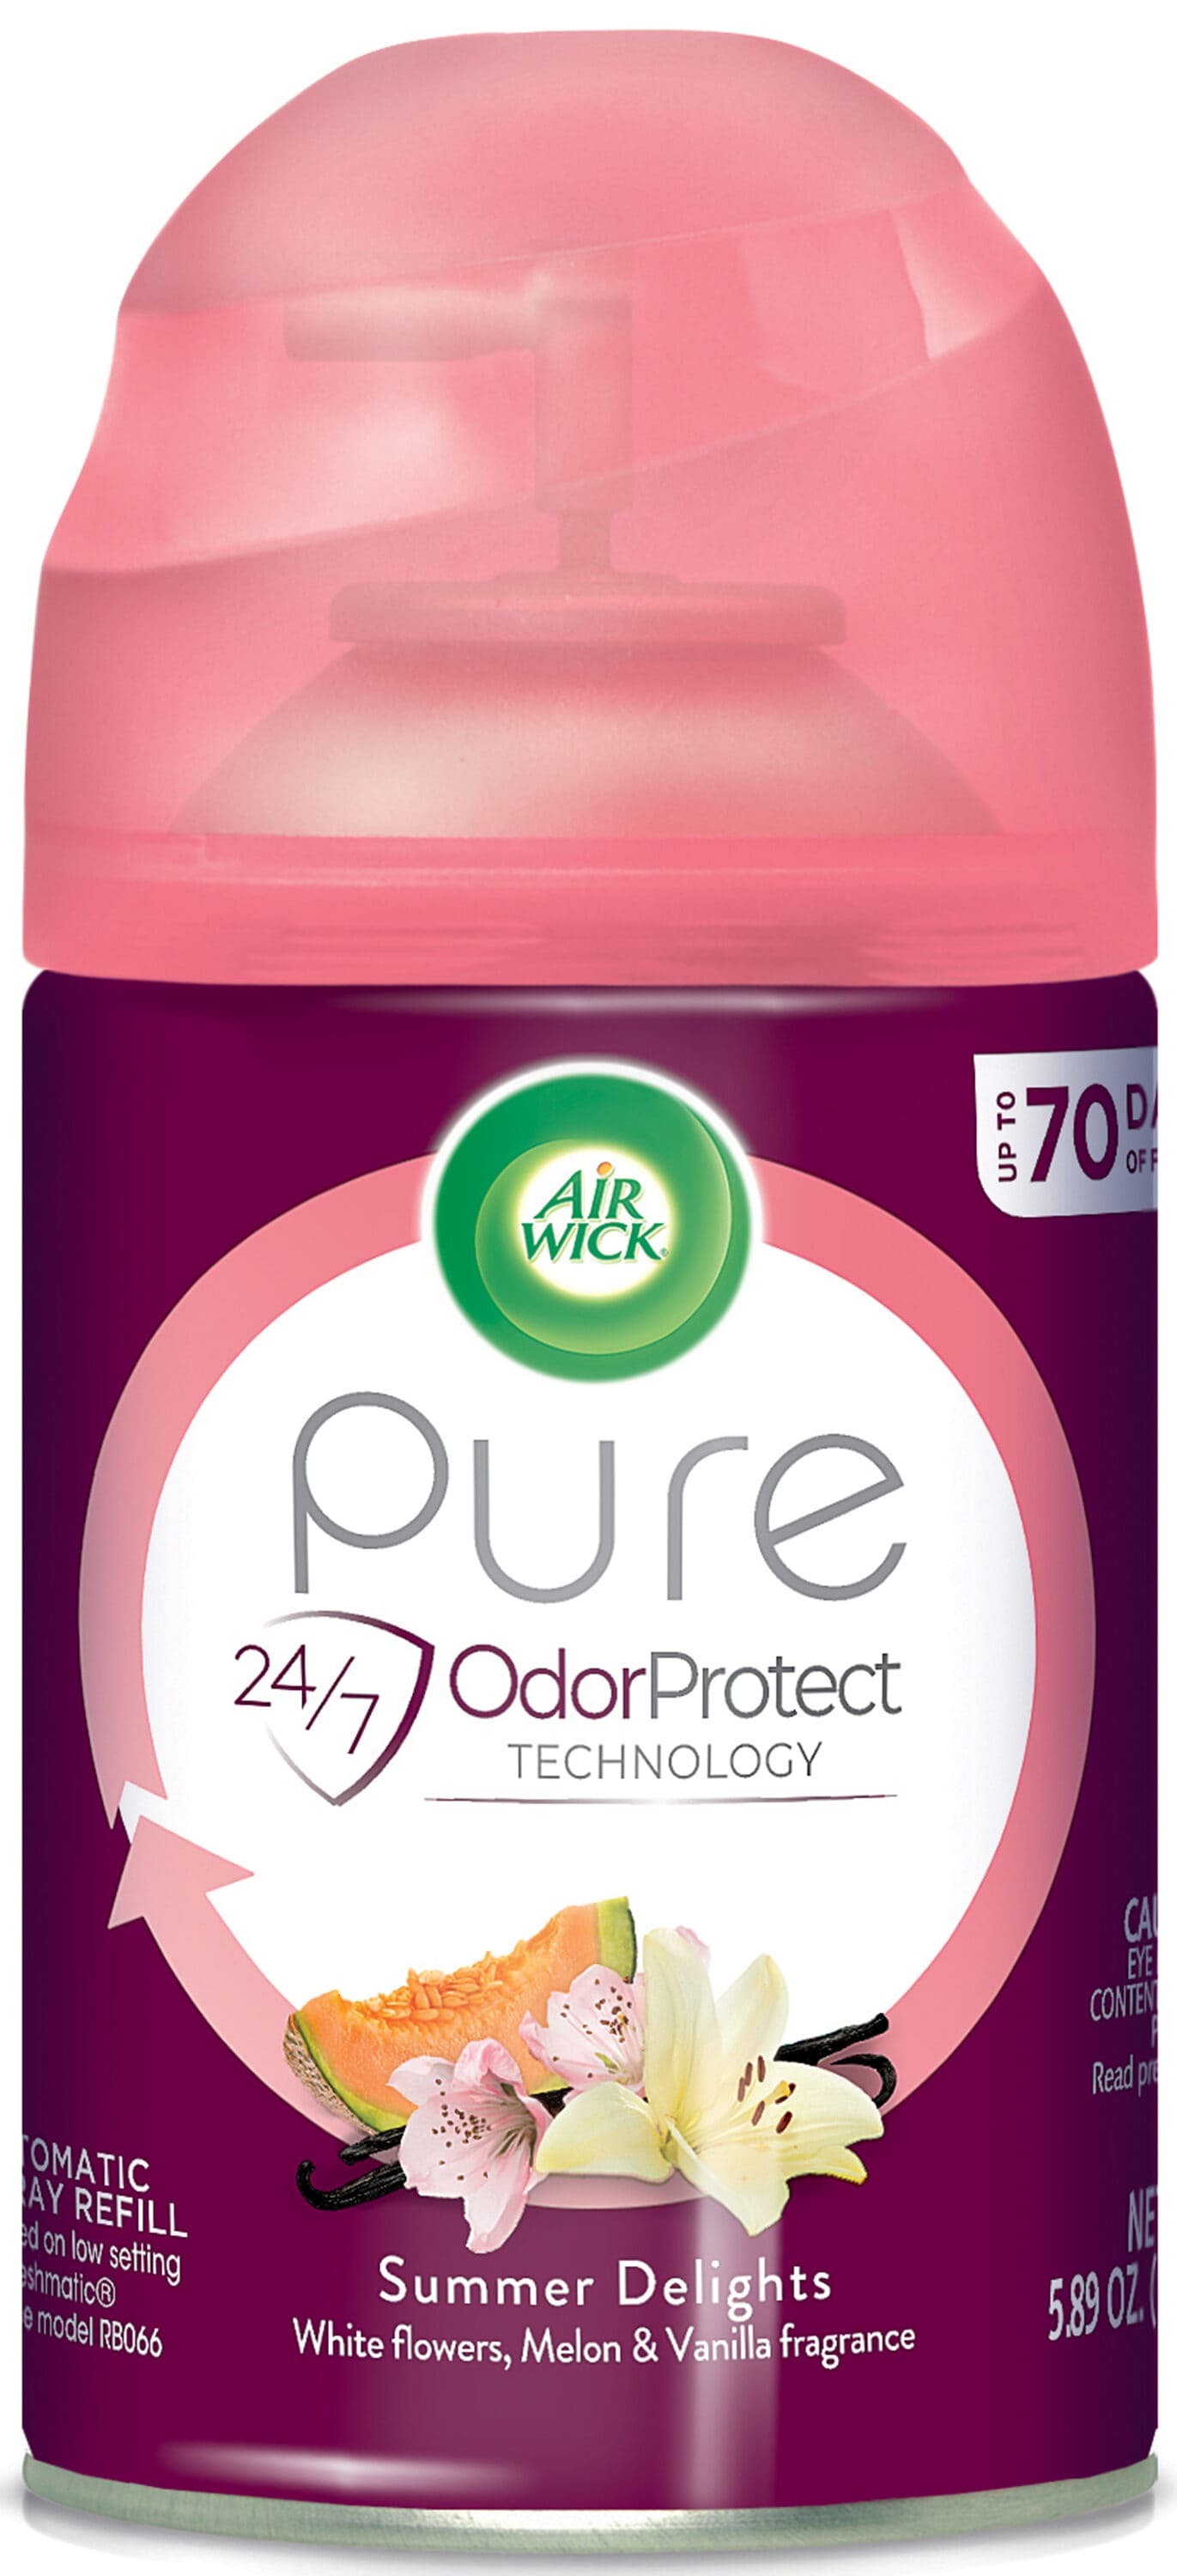 Air Wick Freshmatic Life Scents Summer Delights Refill (ricarica) -  Deodorante per ambienti